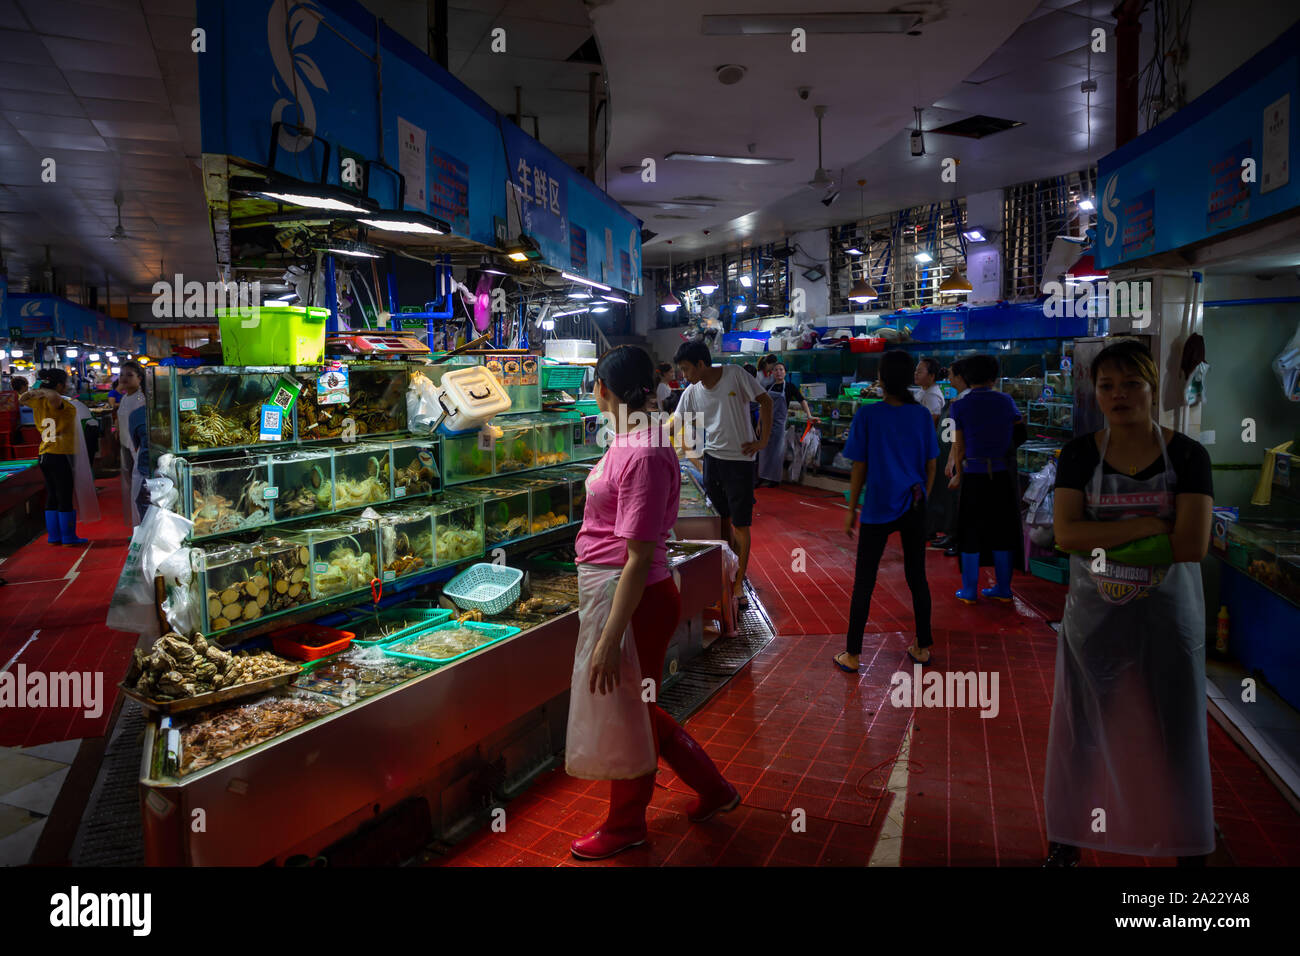 Sanya, Hainan, China - 09.07.2019: Different kinds of raw fresh seafood in water tanks at an asian seafood market in Sanya, Hainan, China Stock Photo